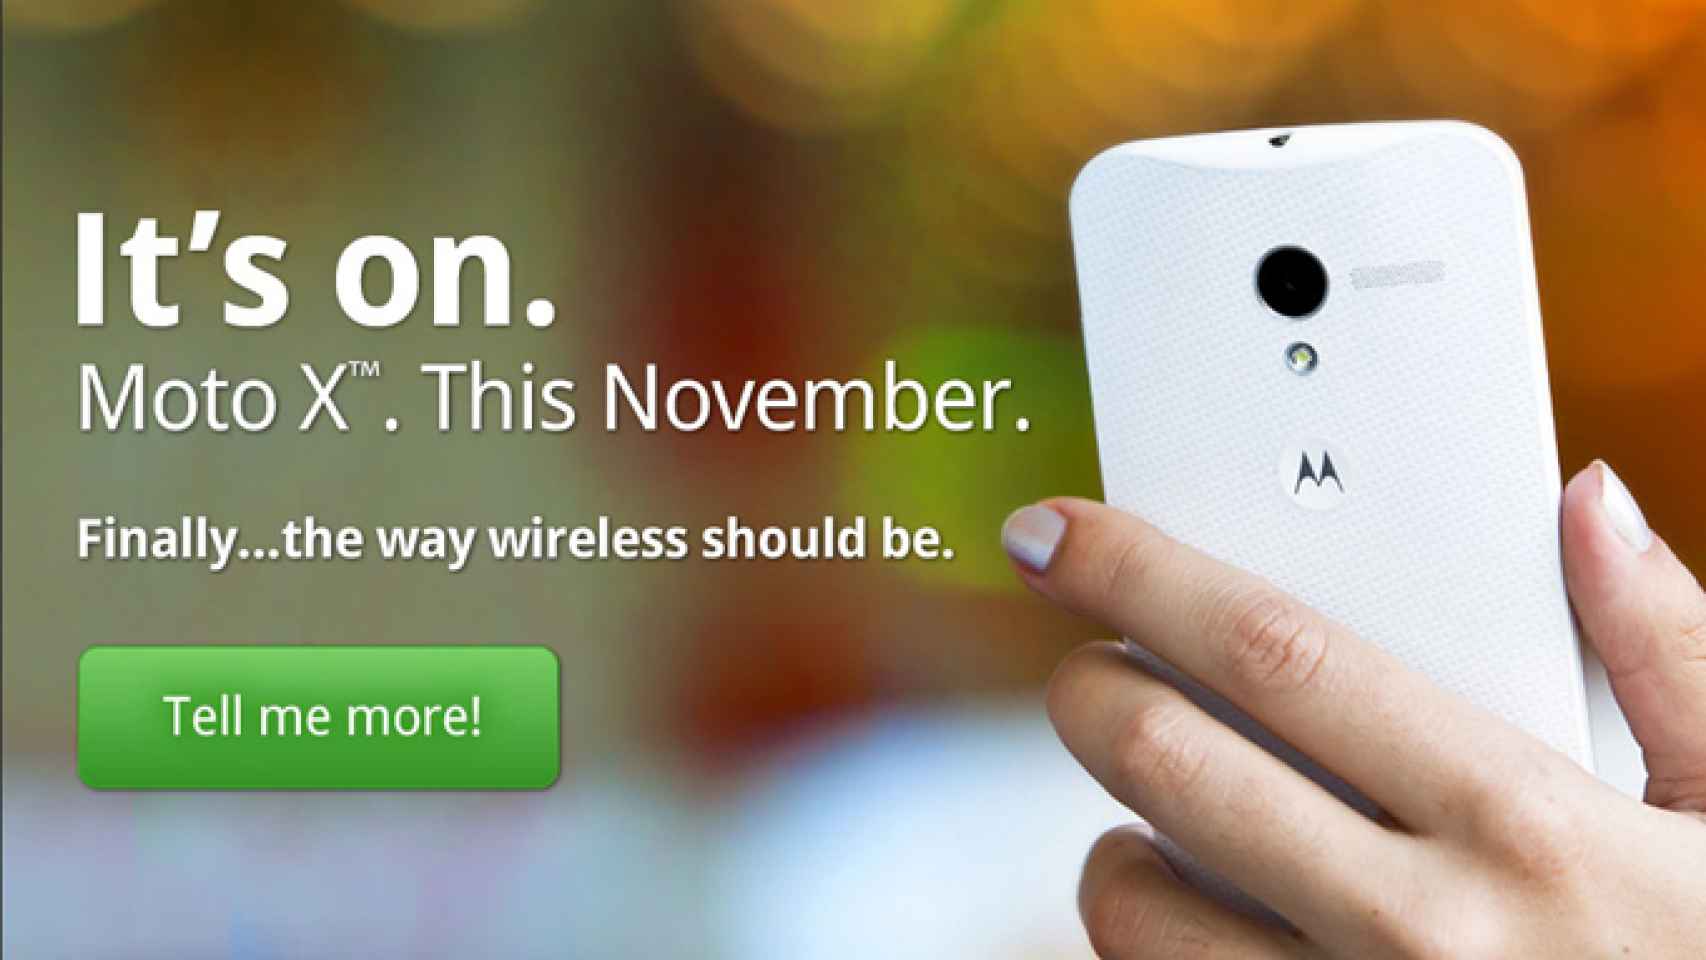 Republic Wireless venderá el Motorola Moto X por 299$ sin contrato